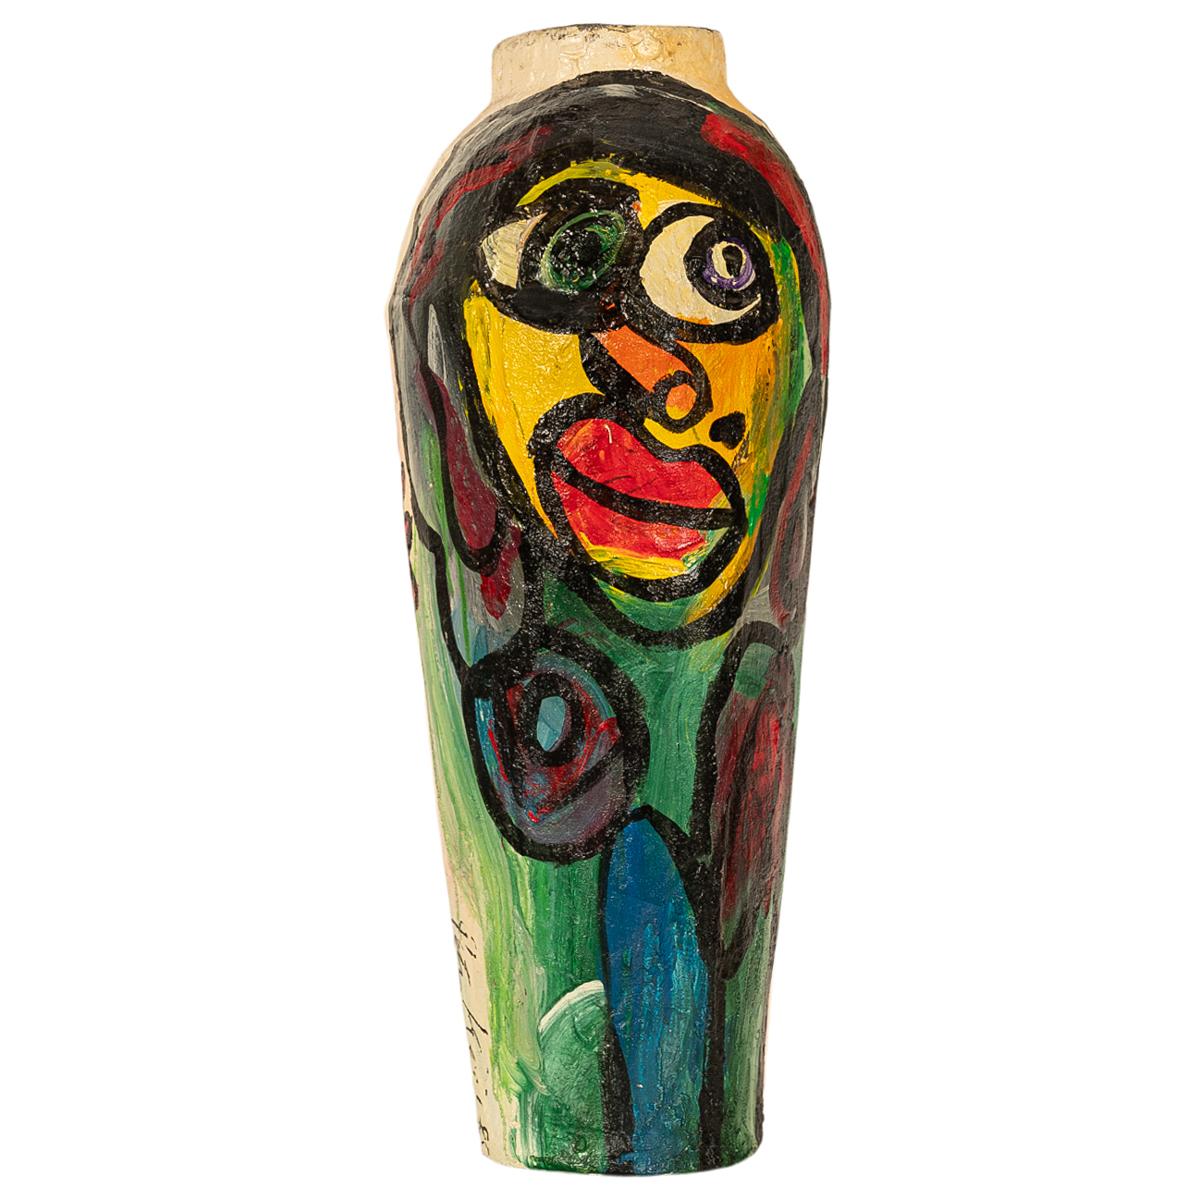 Große Abstrakte Expressionistische Pappmaché Bemalte Bodenskulptur Vase 1985 – Sculpture von Peter Robert Keil